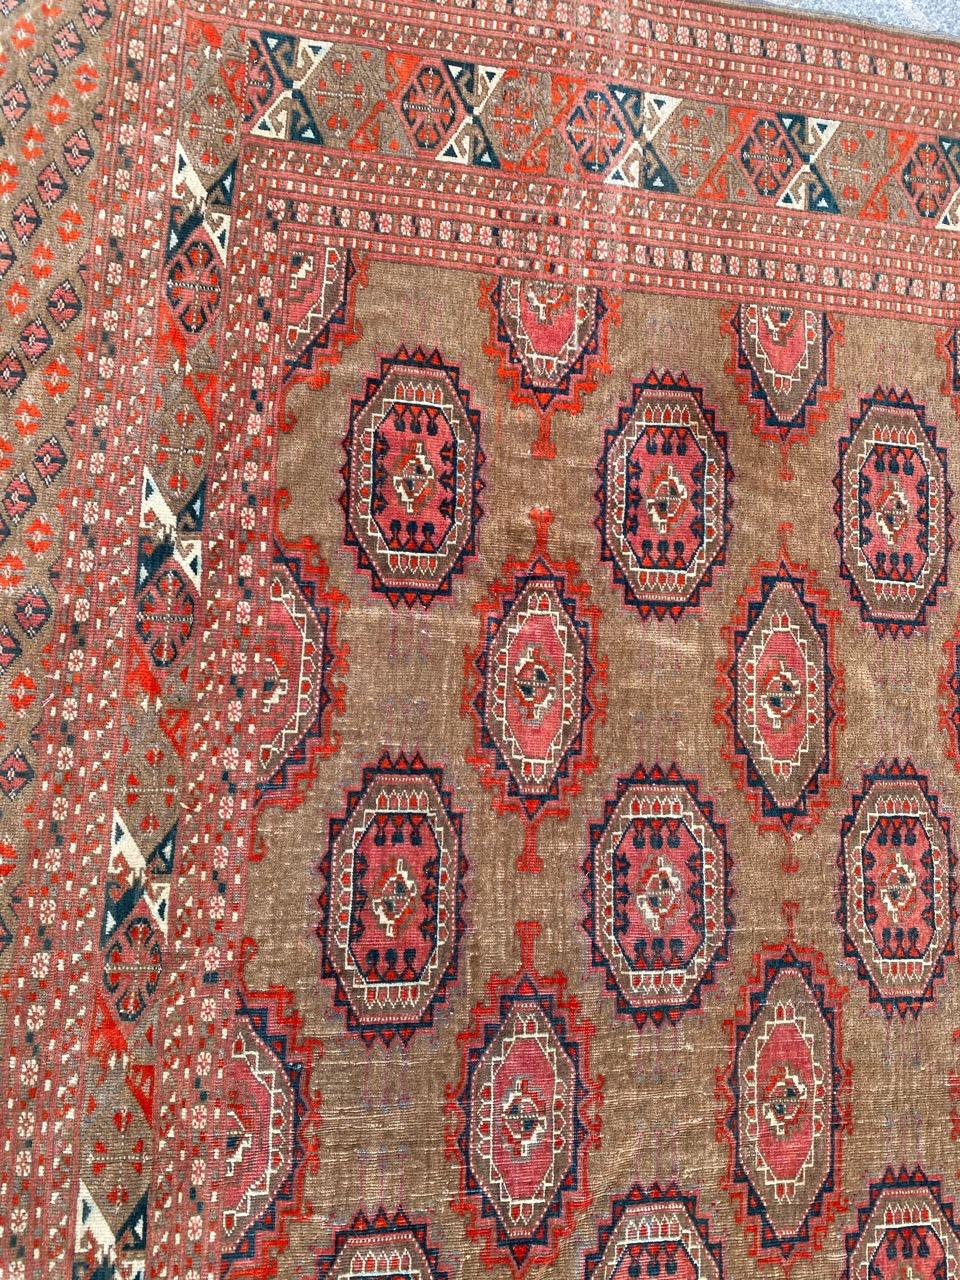 Merveilleux grand tapis turkmène très fin avec un beau dessin de guls afghans, et de belles couleurs naturelles, entièrement et très finement noué à la main avec du velours de laine sur une base de laine.